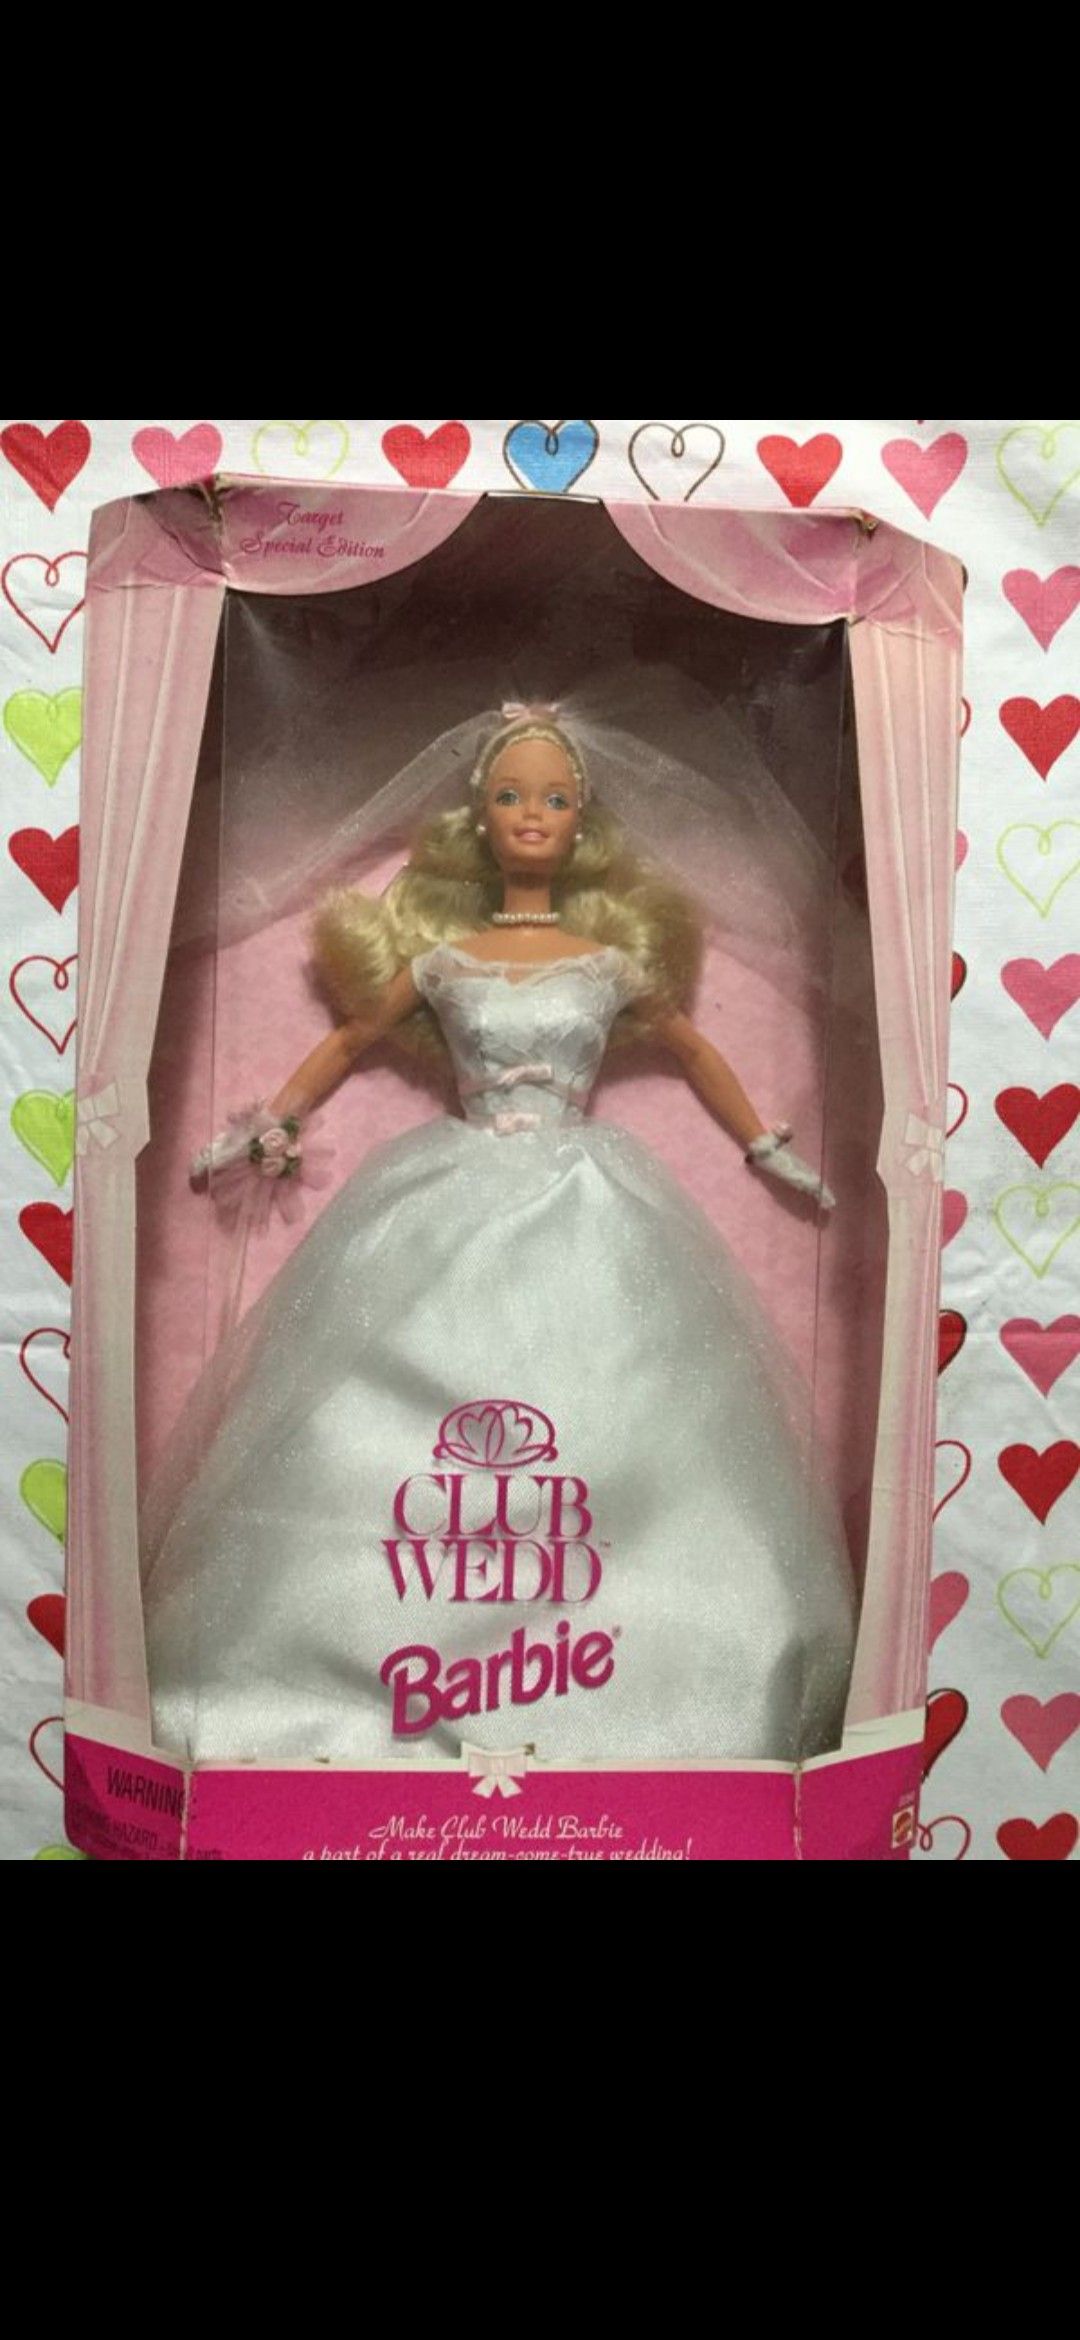 Club Wedding Barbie!